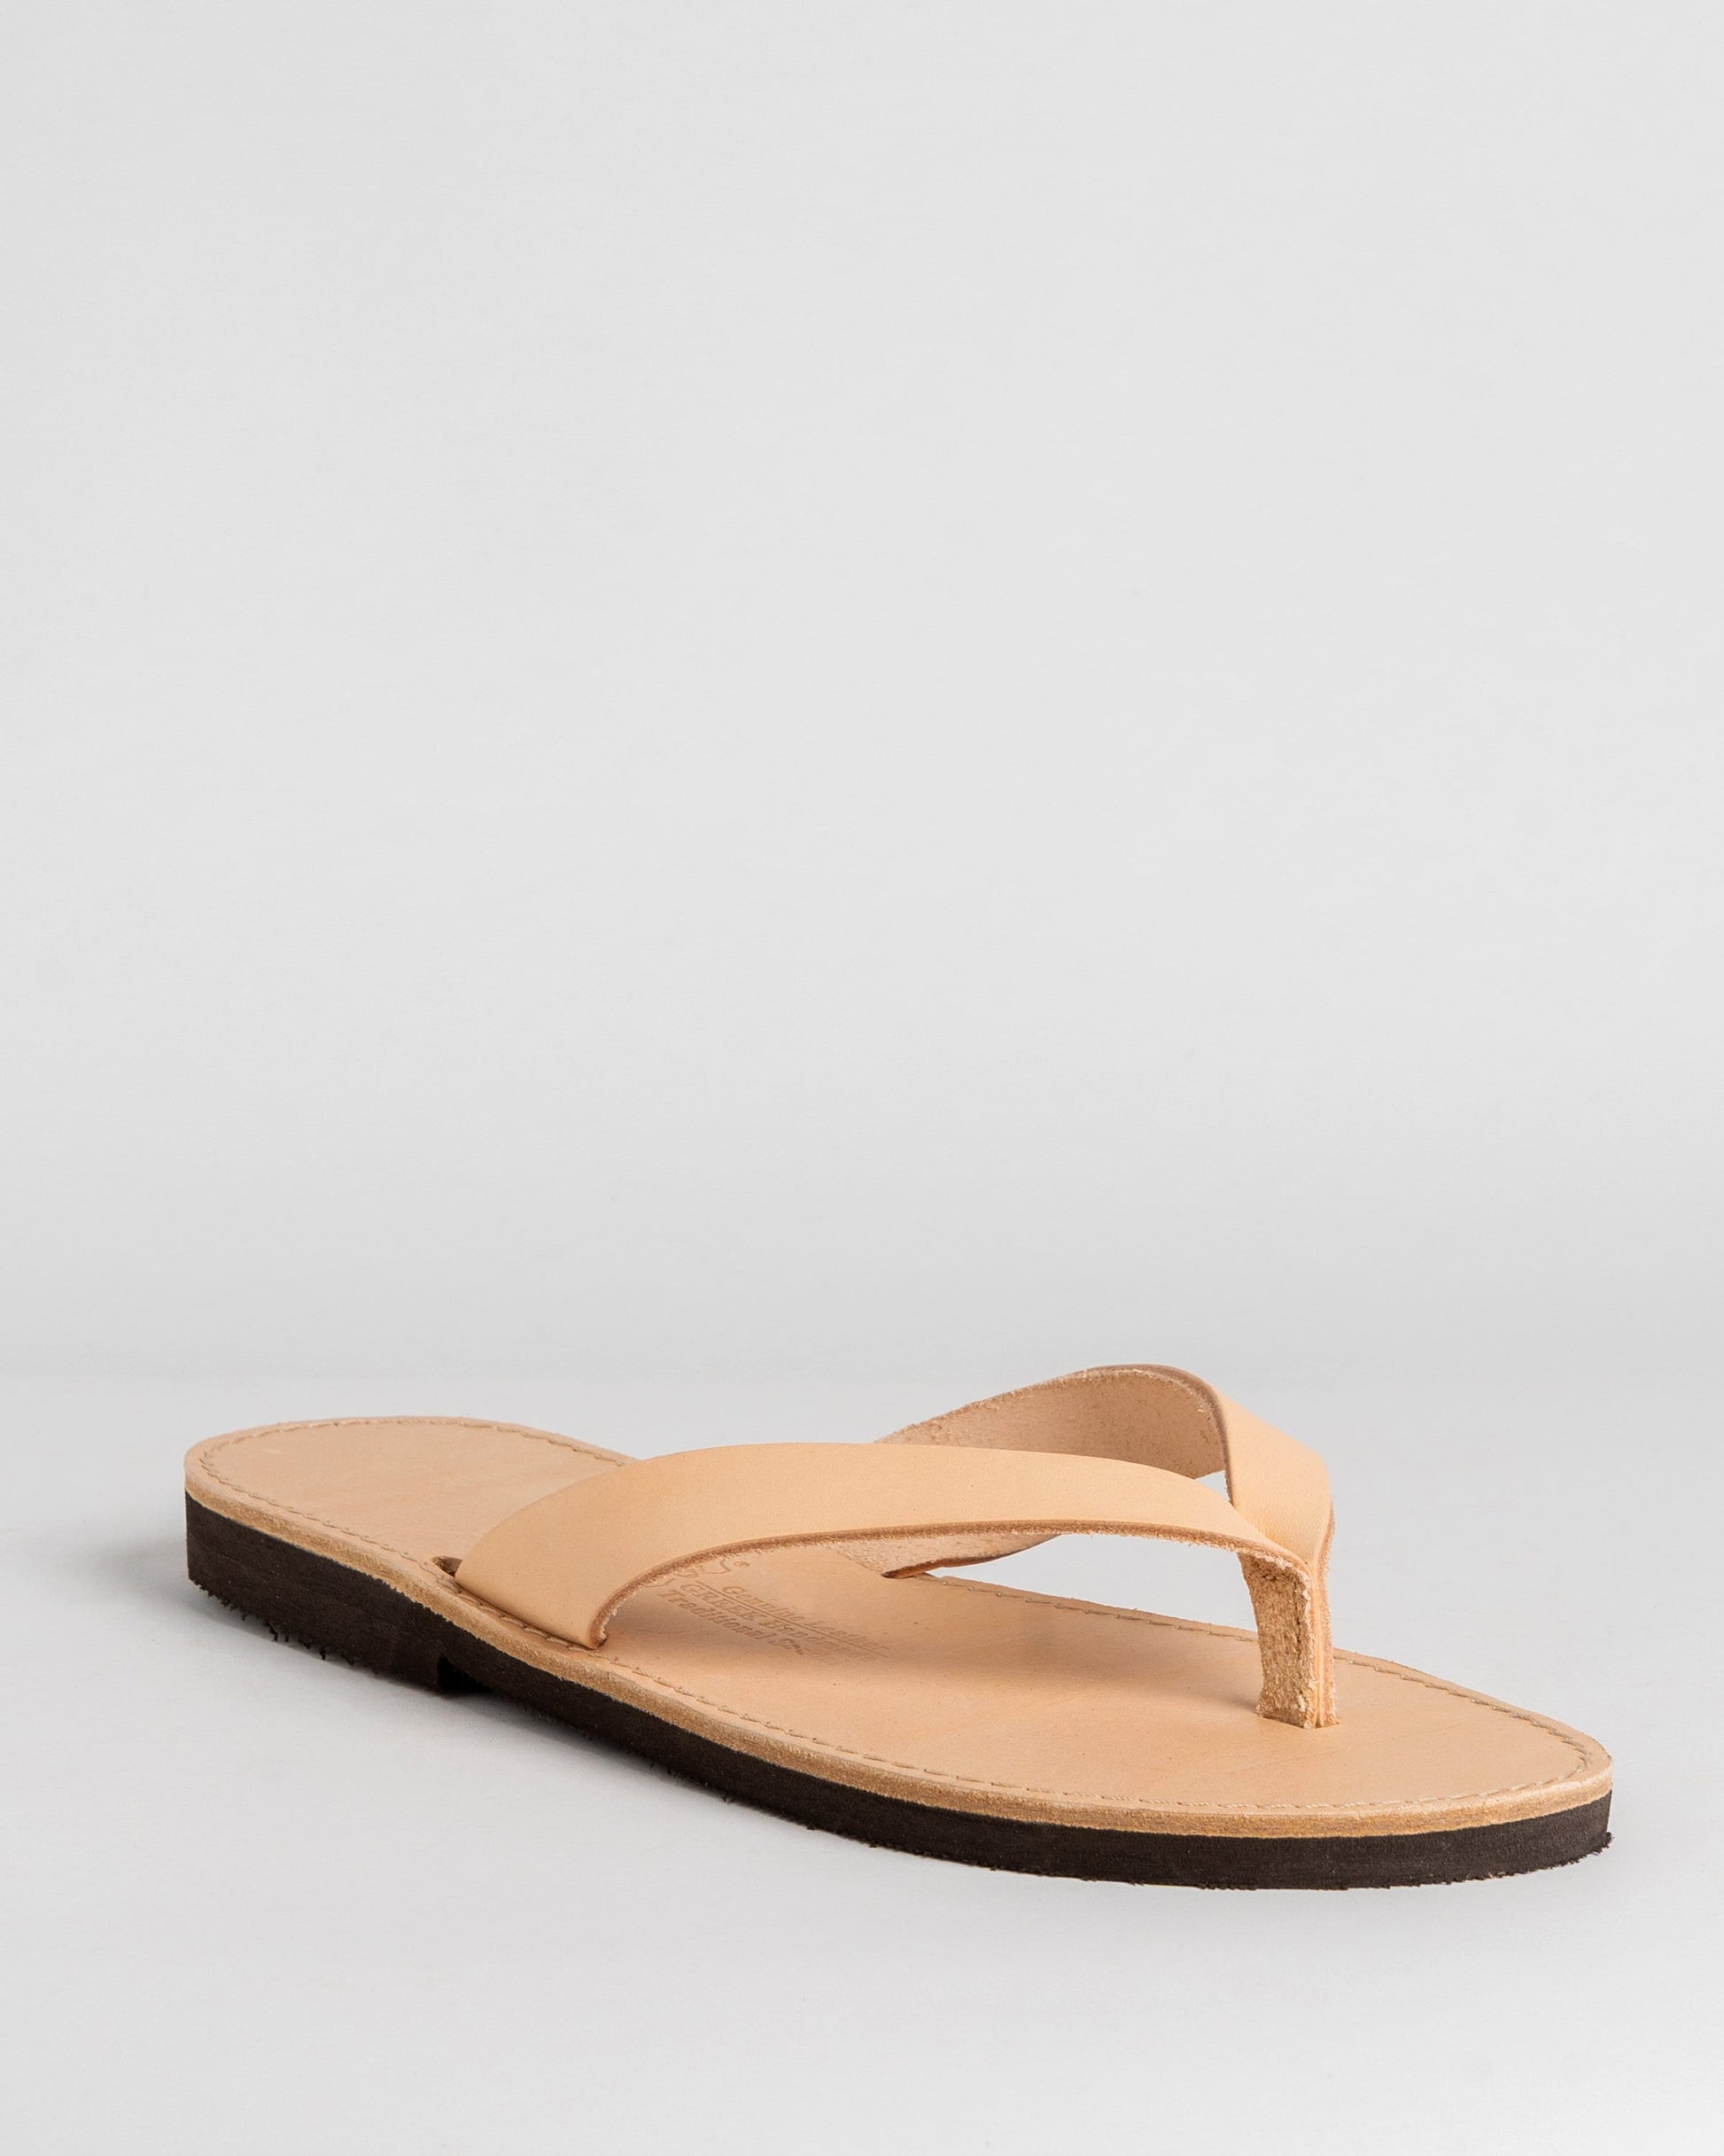 Flip flops mens leather sandals, Greek natural leather sandals , Barefoot thong leather sandals, Minimalist flat summer sandals